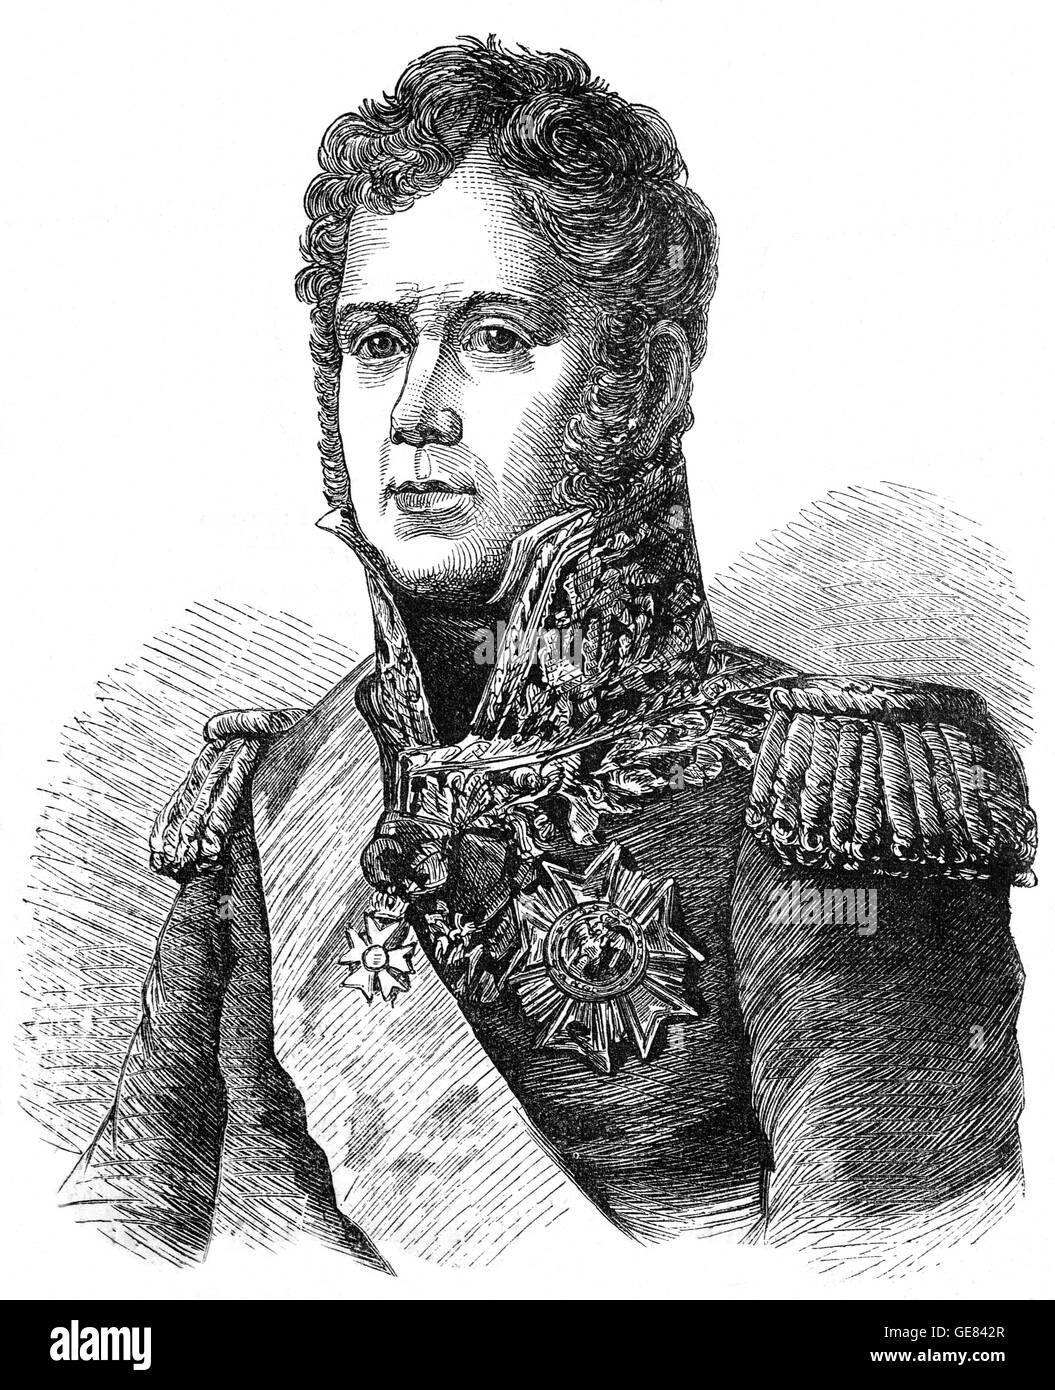 Michel Ney(1769 – 1815), bekannt als Marschall Ney, war ein französischer Soldat und Feldherr während französische revolutionäre Kriege und Napoleonische Kriege. Er diente in der Invasion 1812 in Russland und war einer der ursprünglichen 18 Marschälle des Reiches durch Napoleon geschaffen. Stockfoto